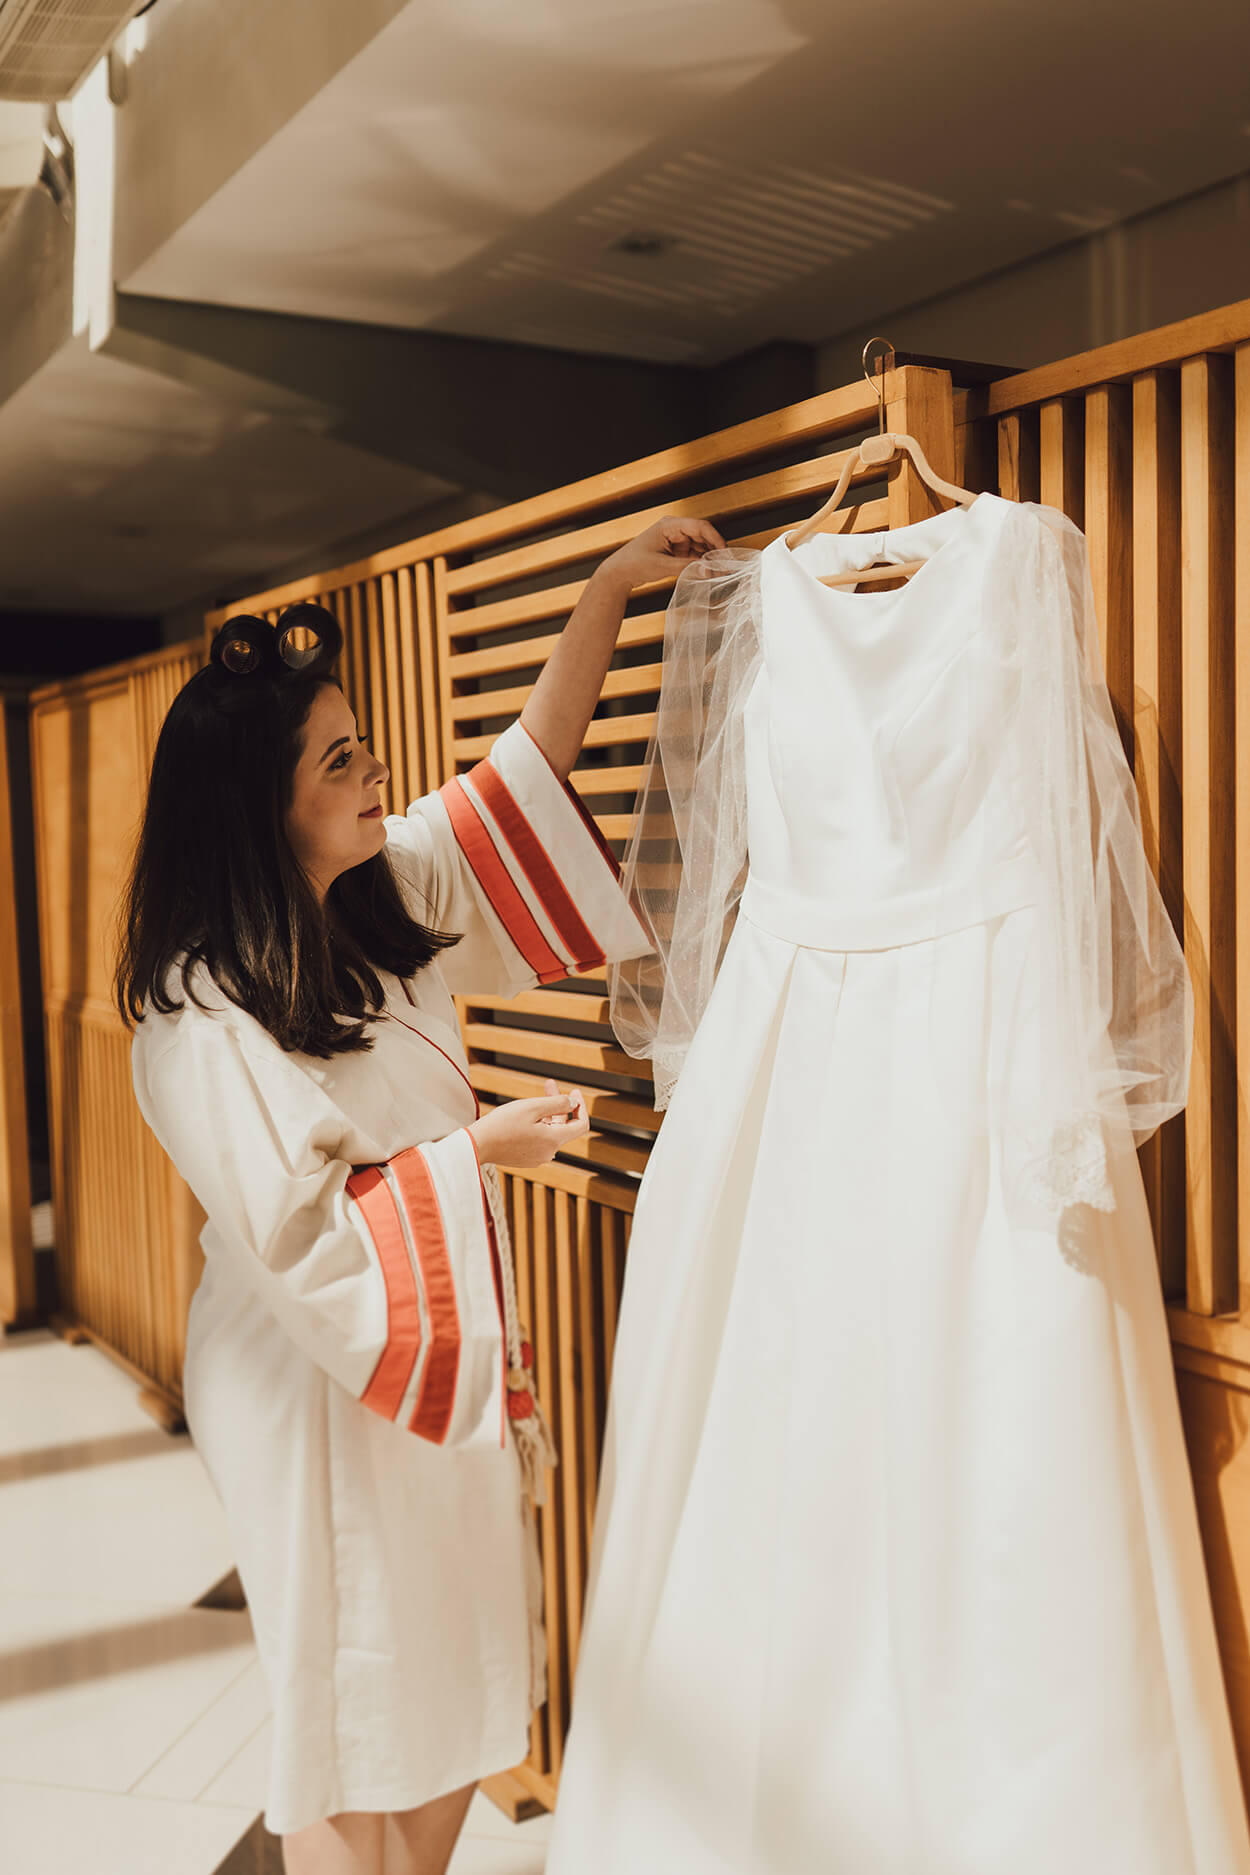 noiva com robe branco com detalhes de faixas laranjas na manga olhando o vestido de noiva com manga longa no cabide